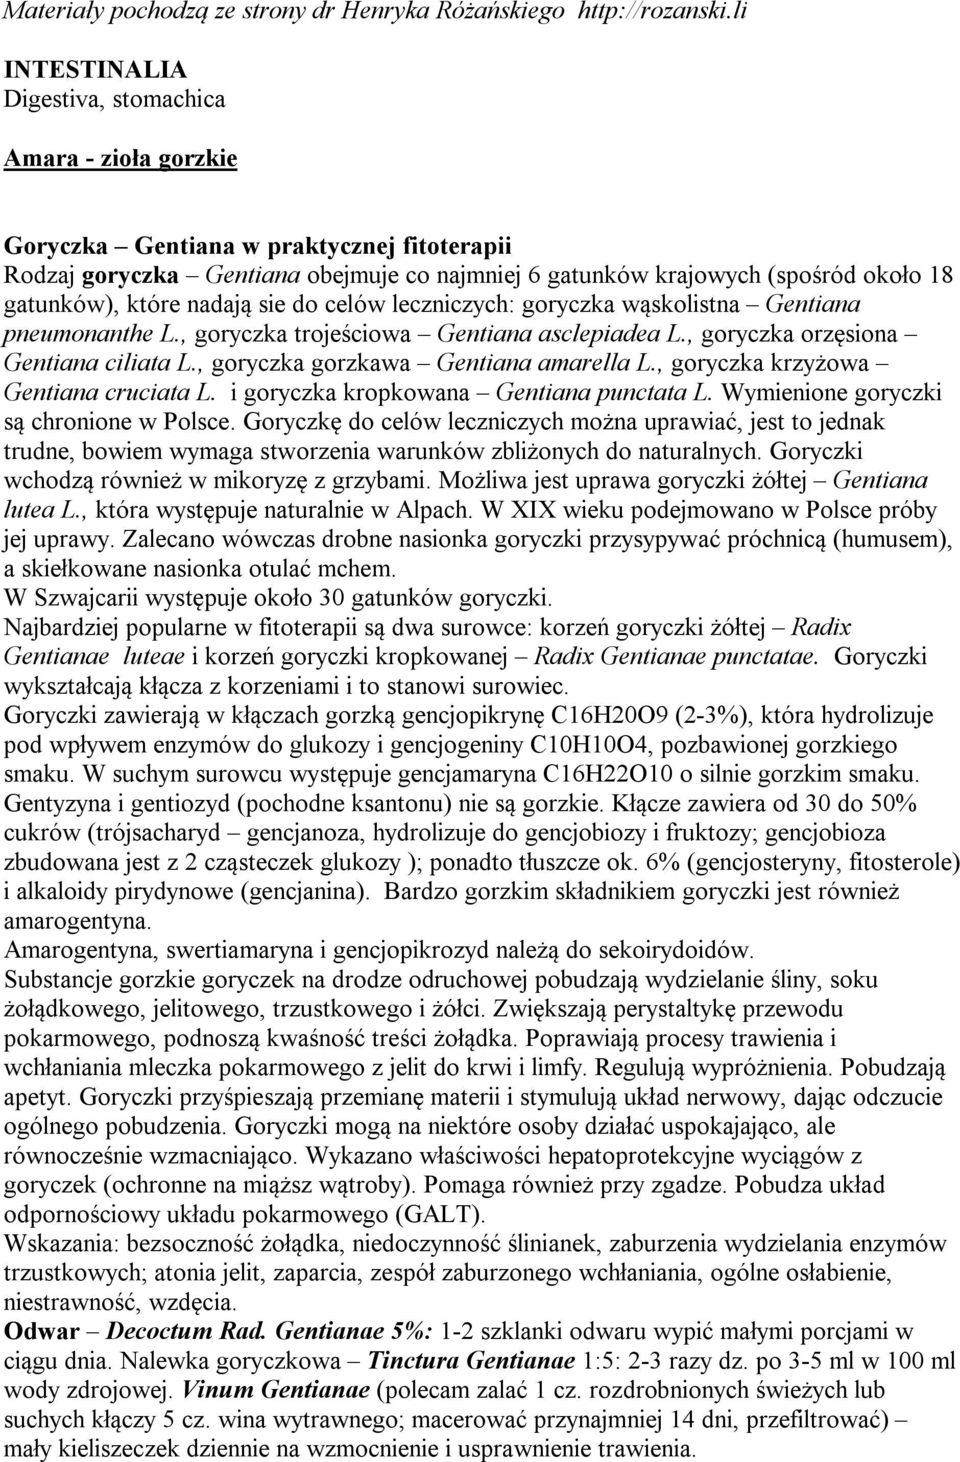 Materiały pochodzą ze strony dr Henryka Różańskiego - PDF Free Download